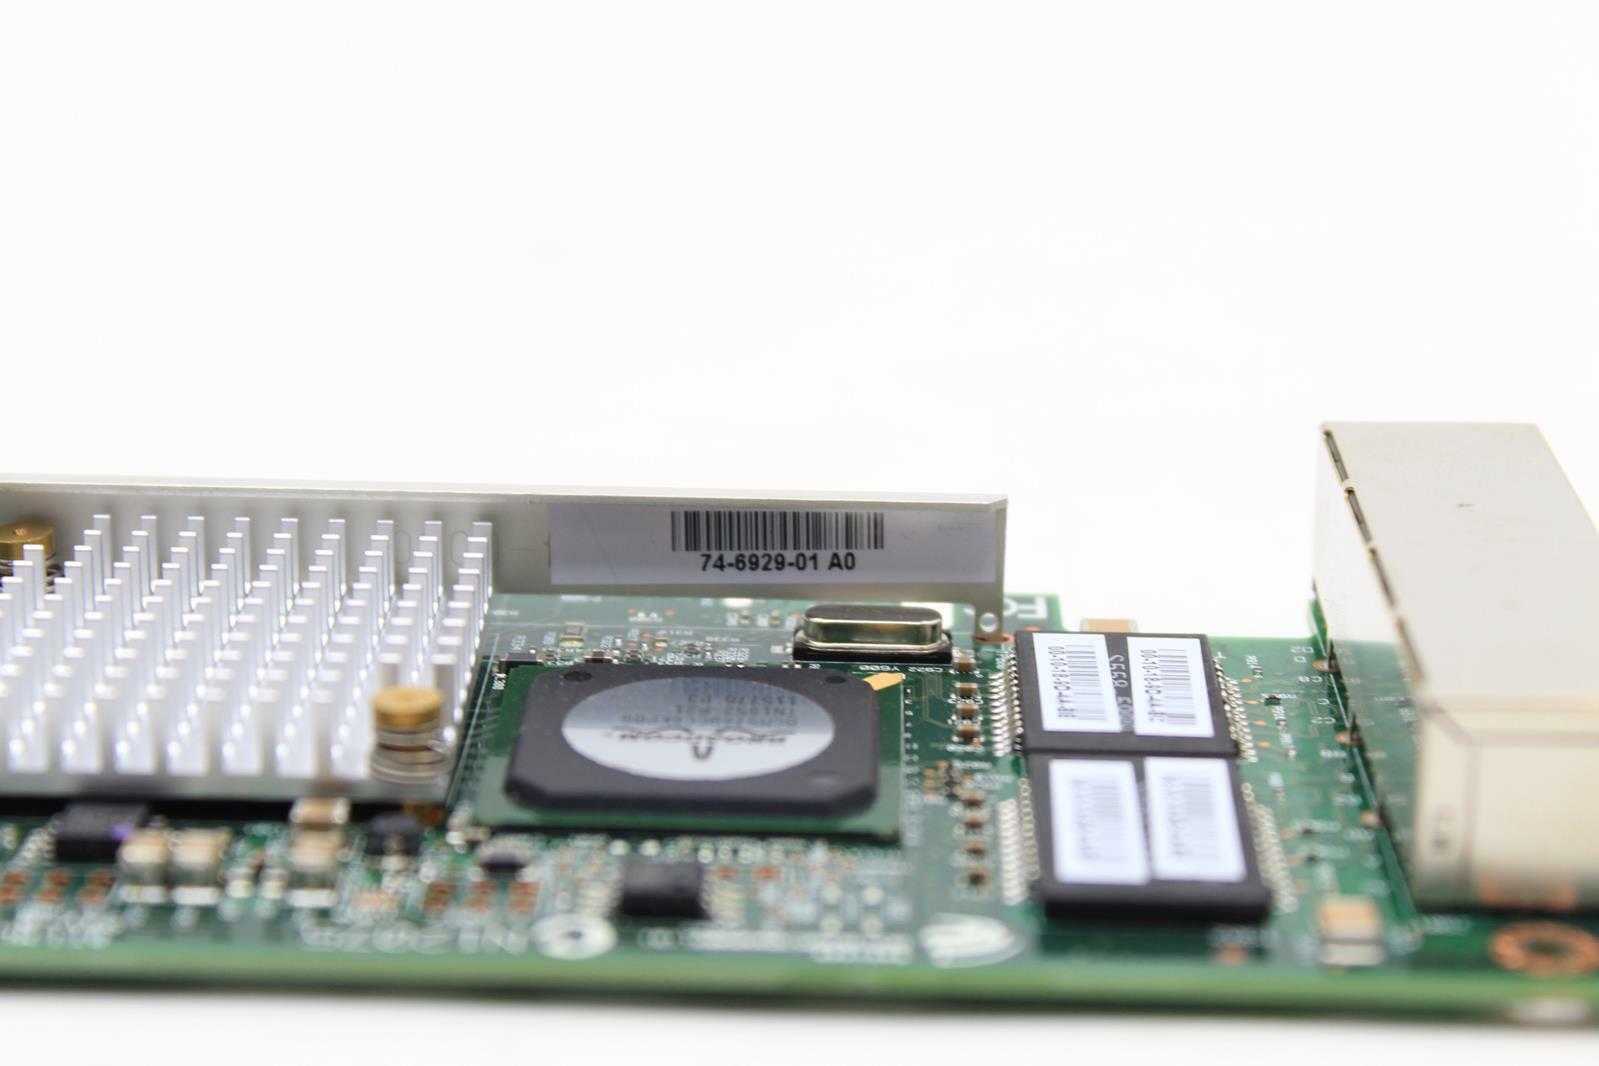 cisco 74-6929-01 A06 BROADCOM PCI-E 4 Port GBit NETWORK CARD UCS SERVER